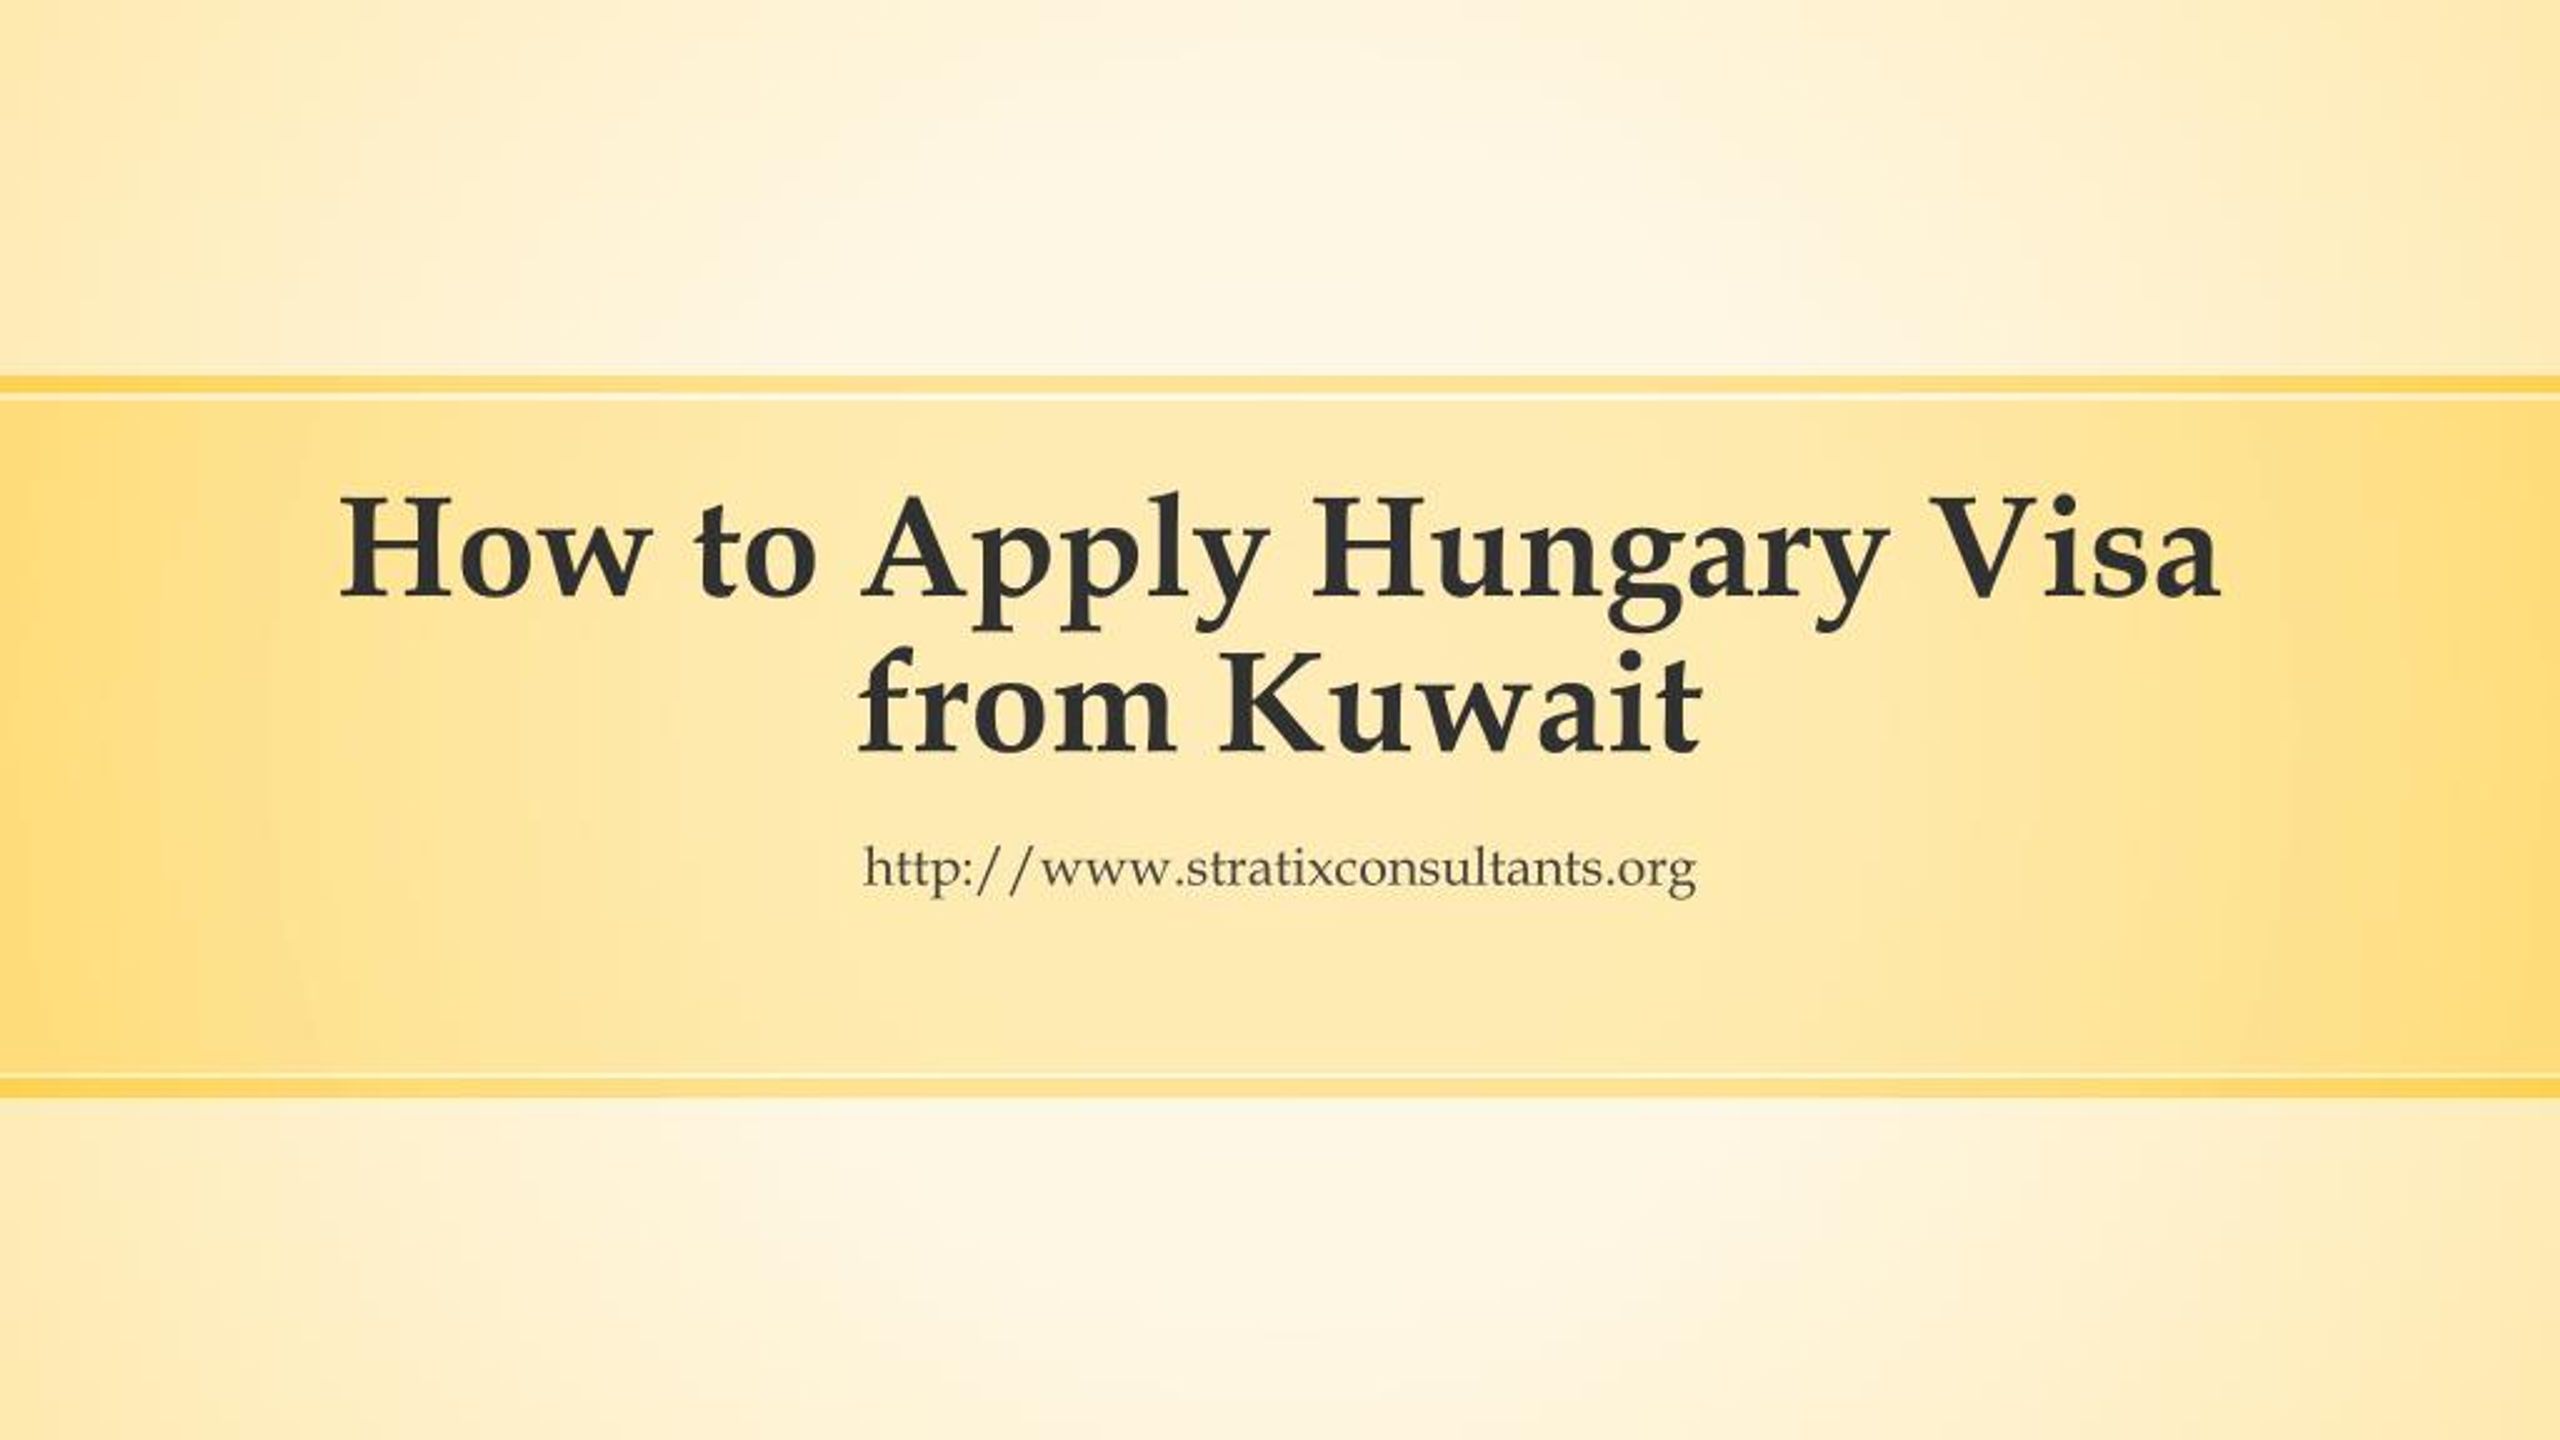 hungary tourist visa from kuwait